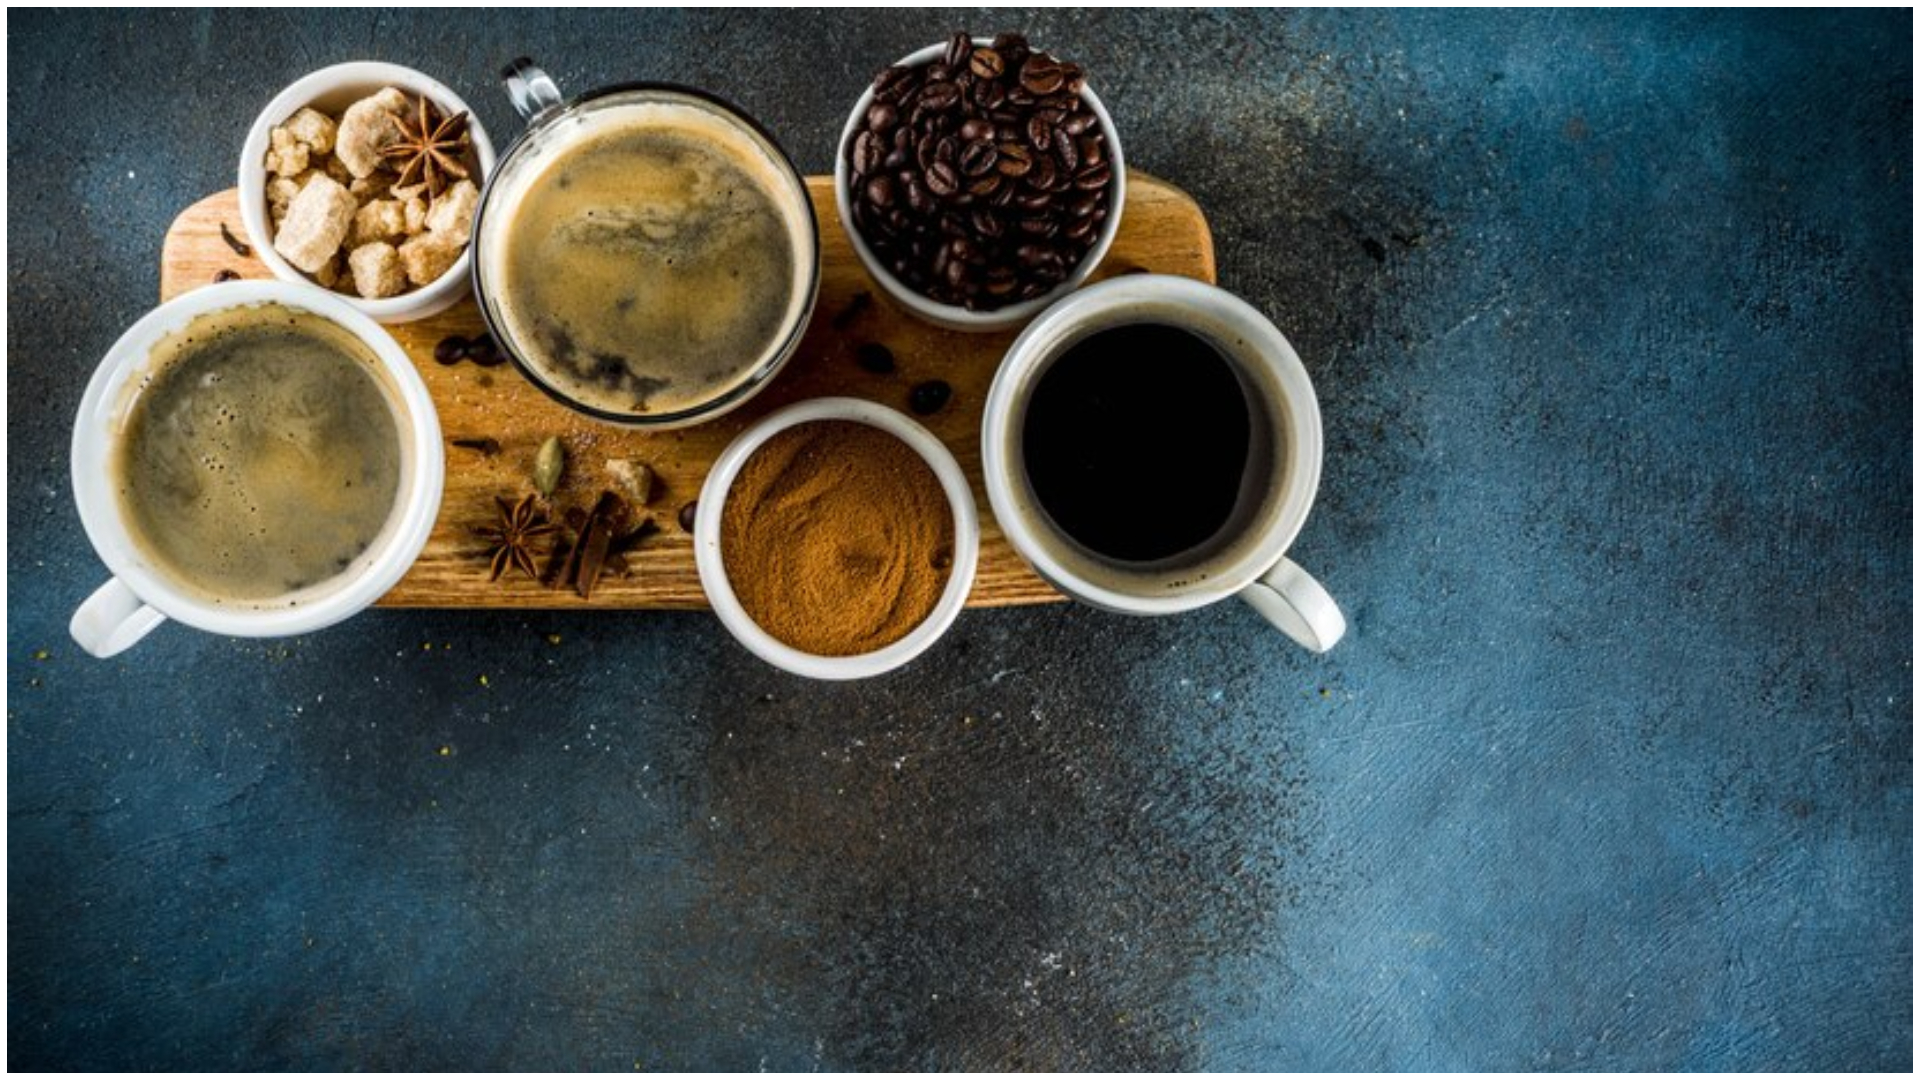 Băutura pe care o poți consuma dimineața în loc de cafea. E un real energizant natural, nu vei simți lipsa cofeinei